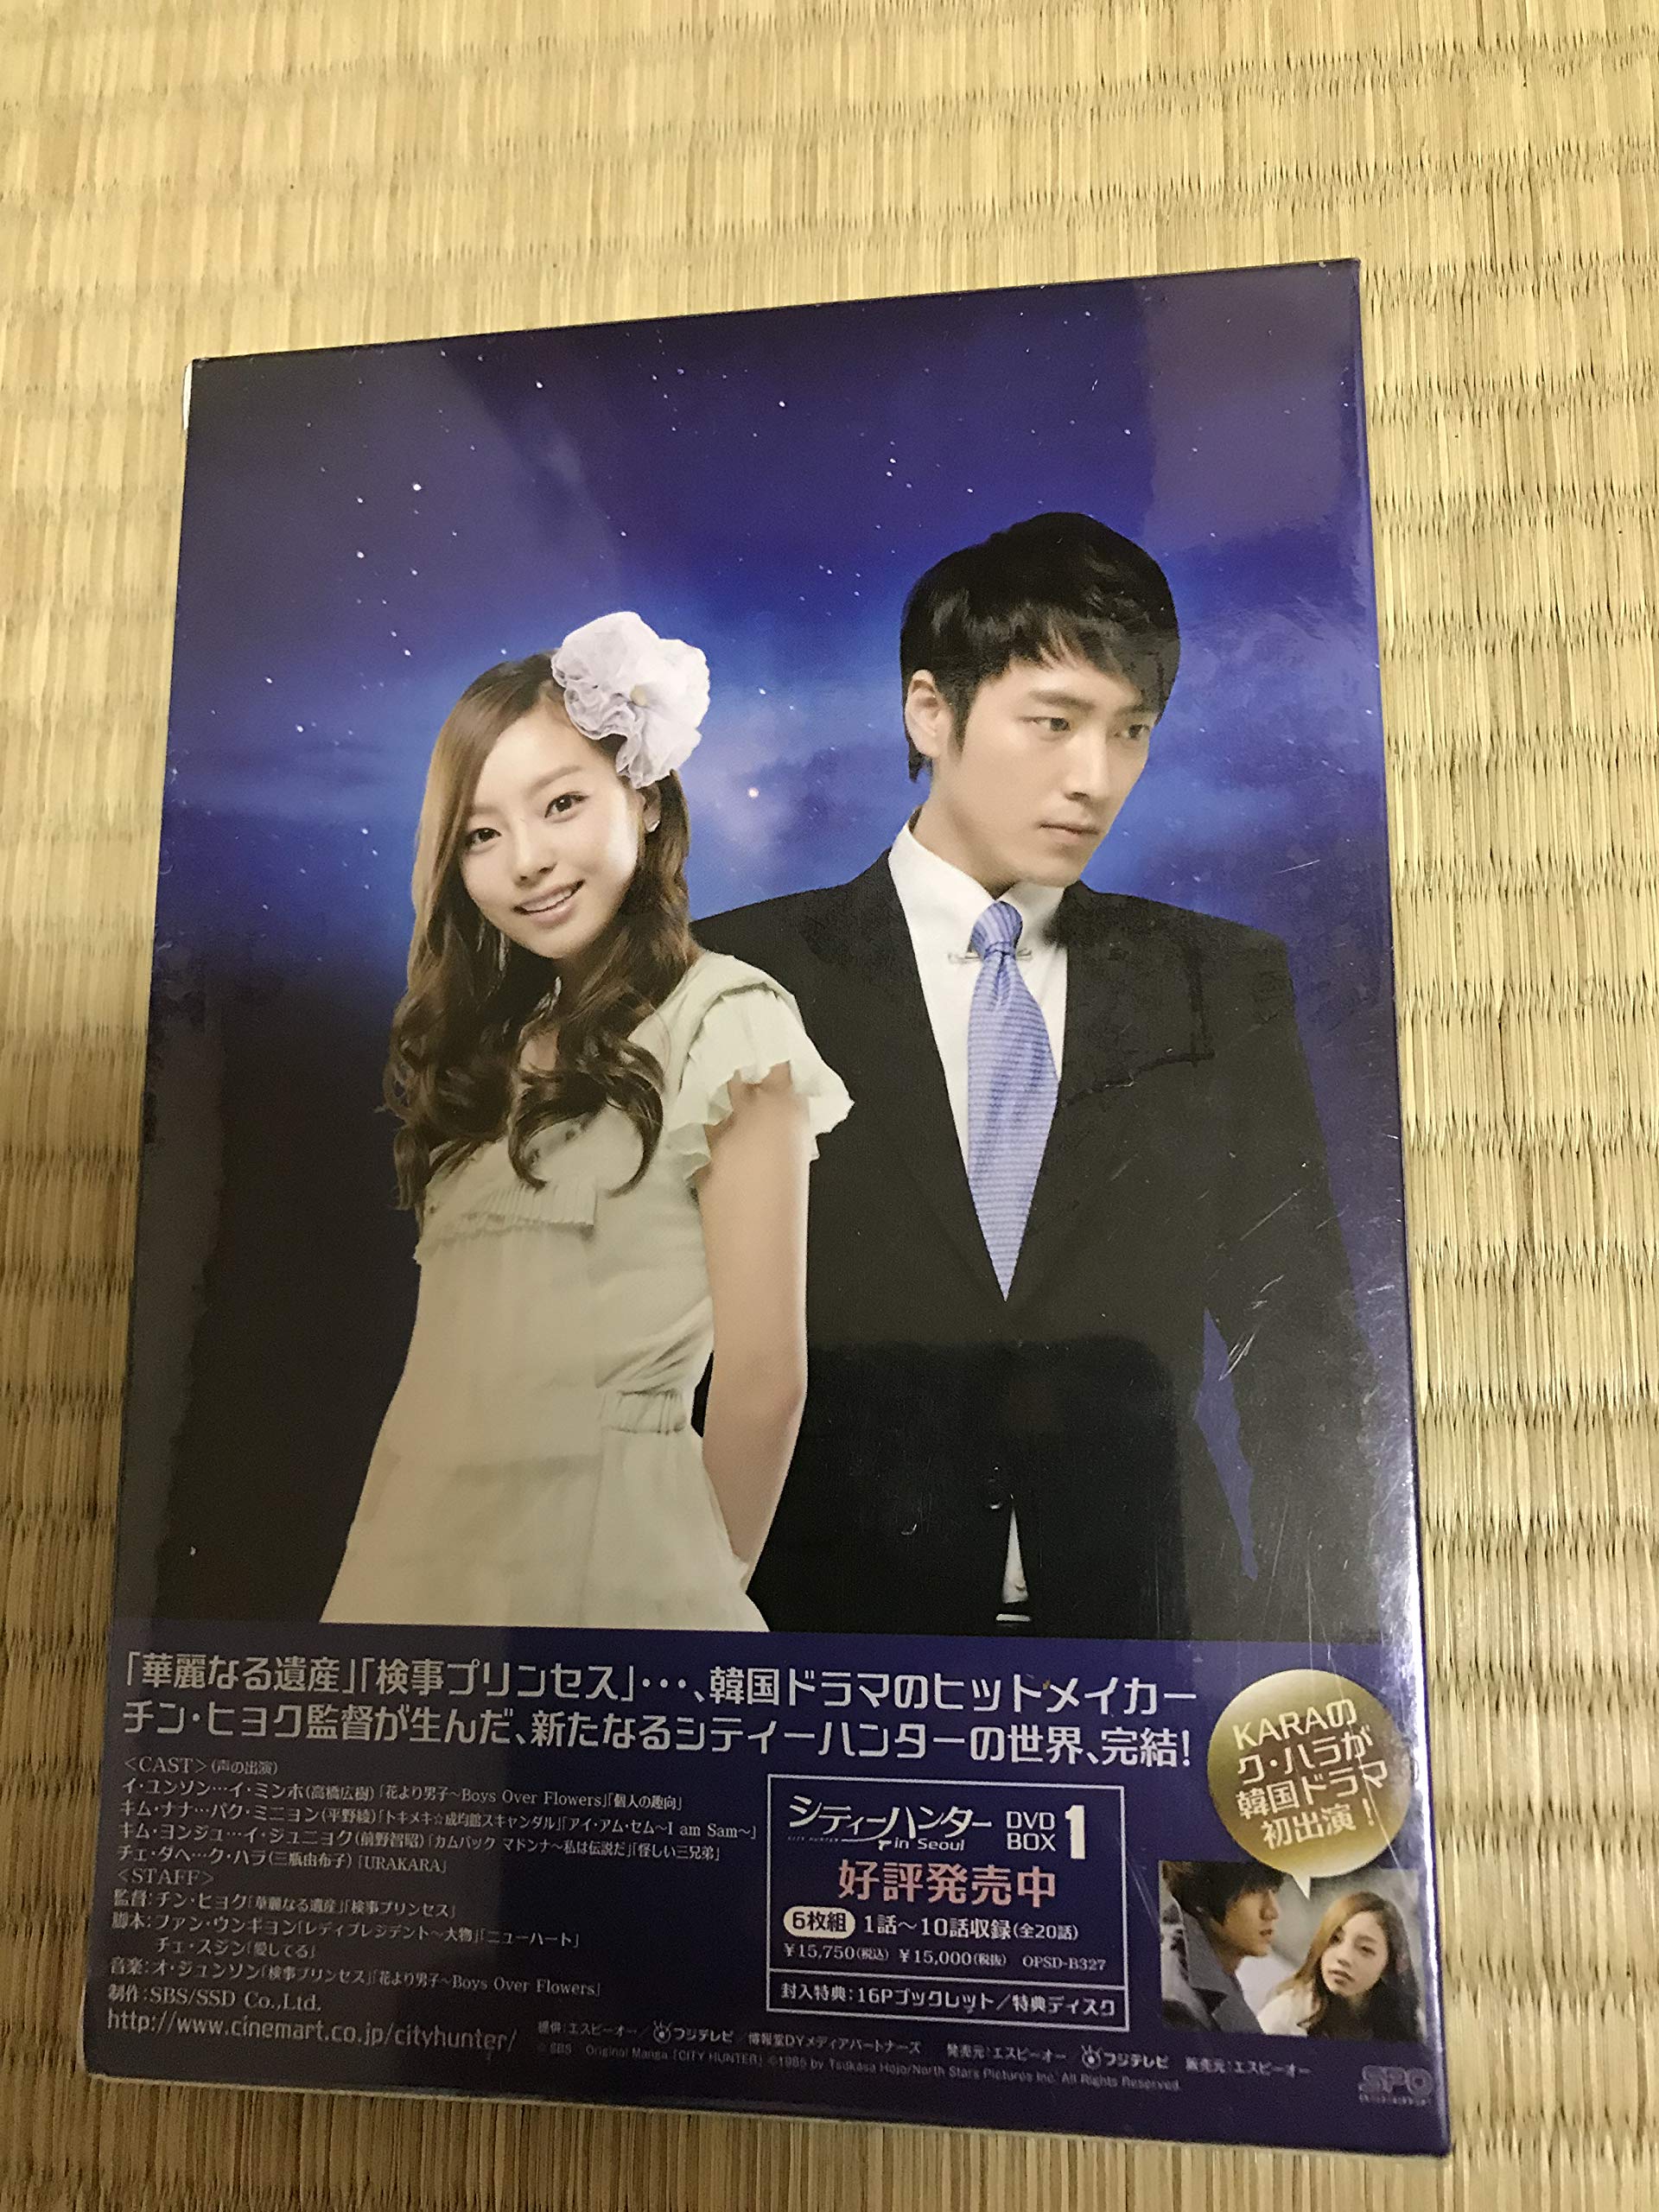 シティーハンター in Seoul DVD-BOX1.2 - 外国映画